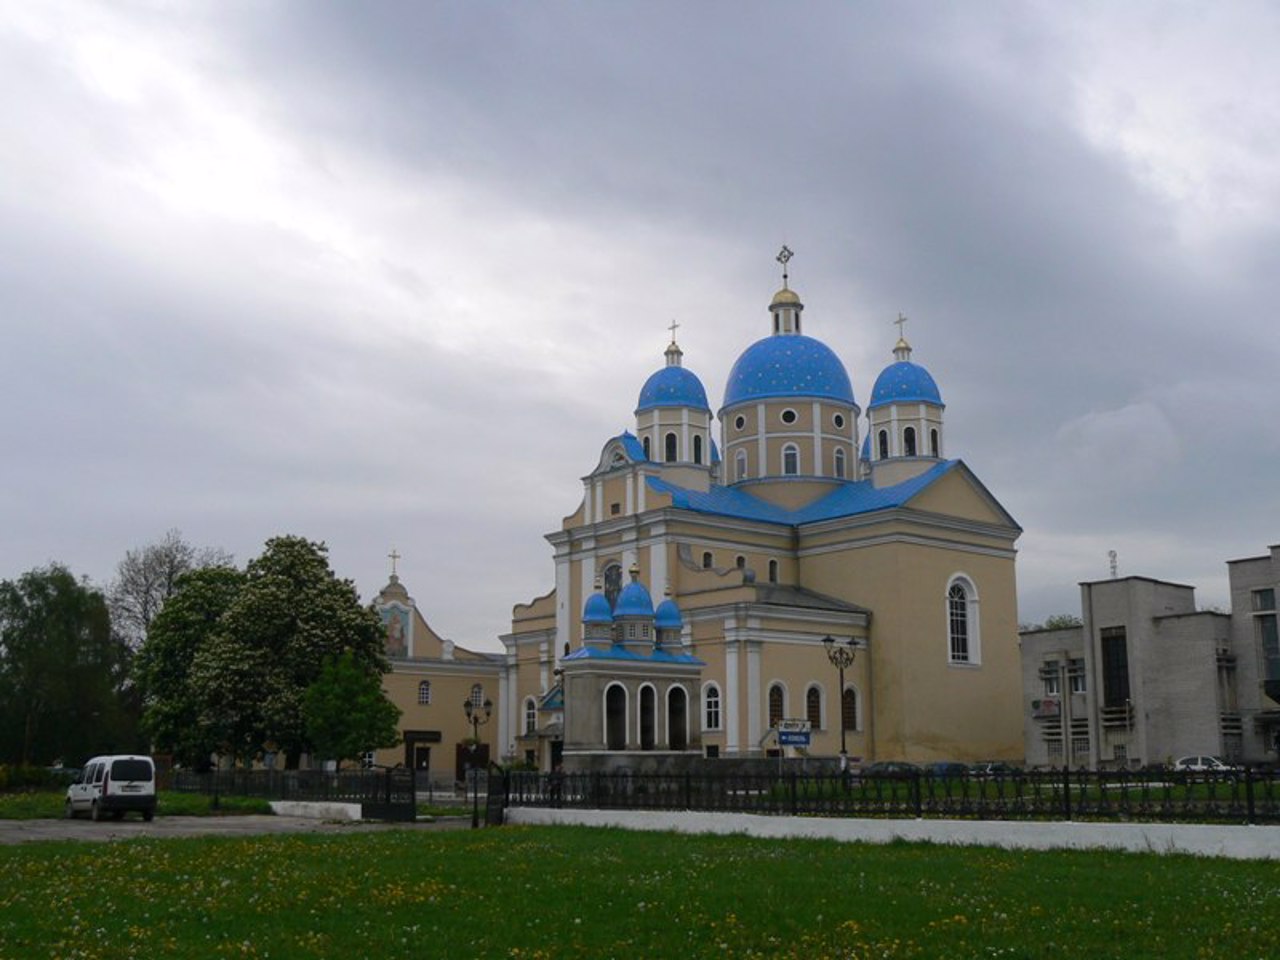 St. Volodymyr Cathedral, Chervonohrad